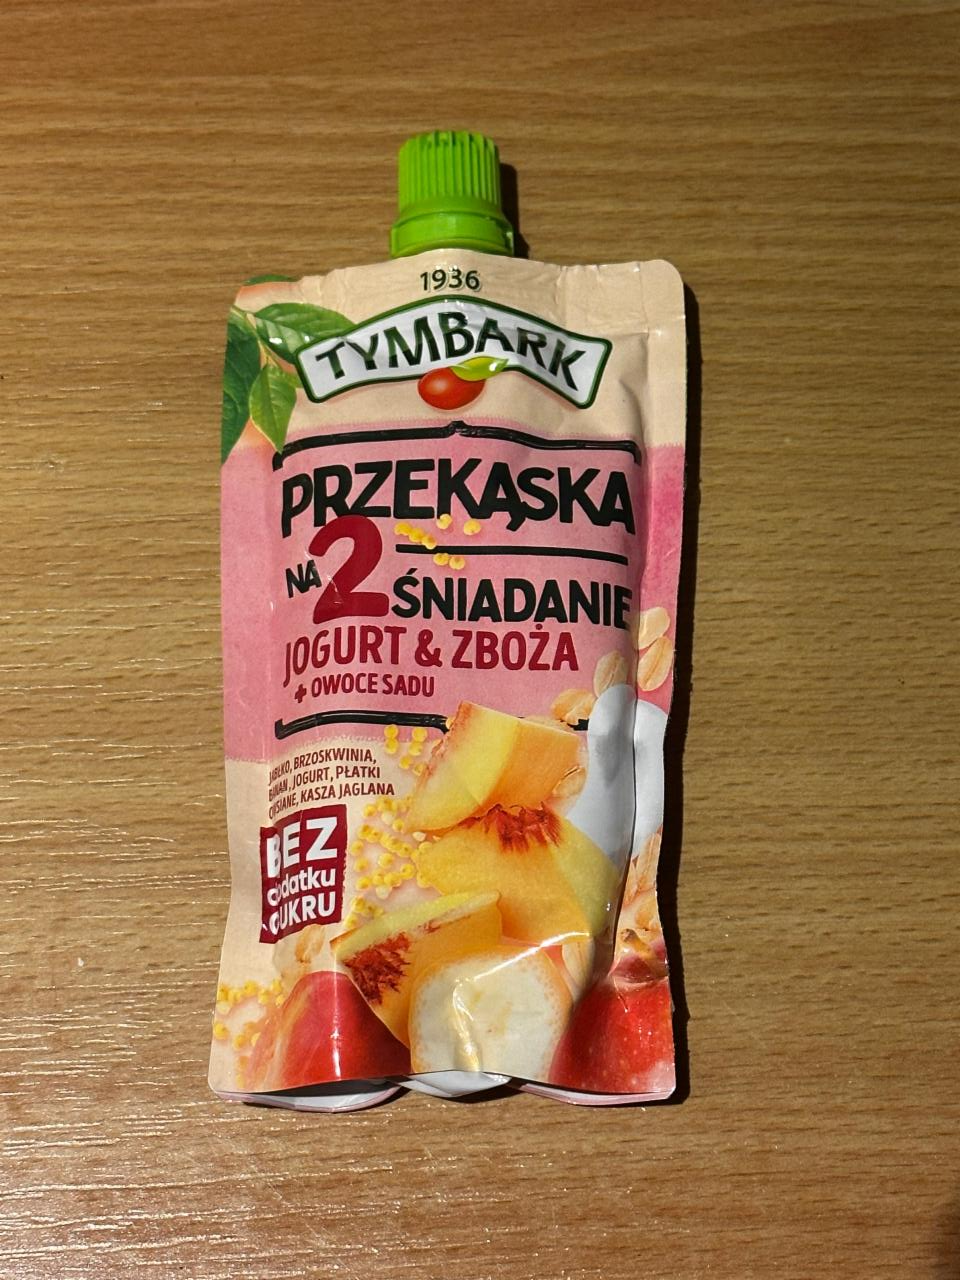 Фото - Przekaska na 2 śniadanie Jogurt & zboża+owoce sadu Tymbark